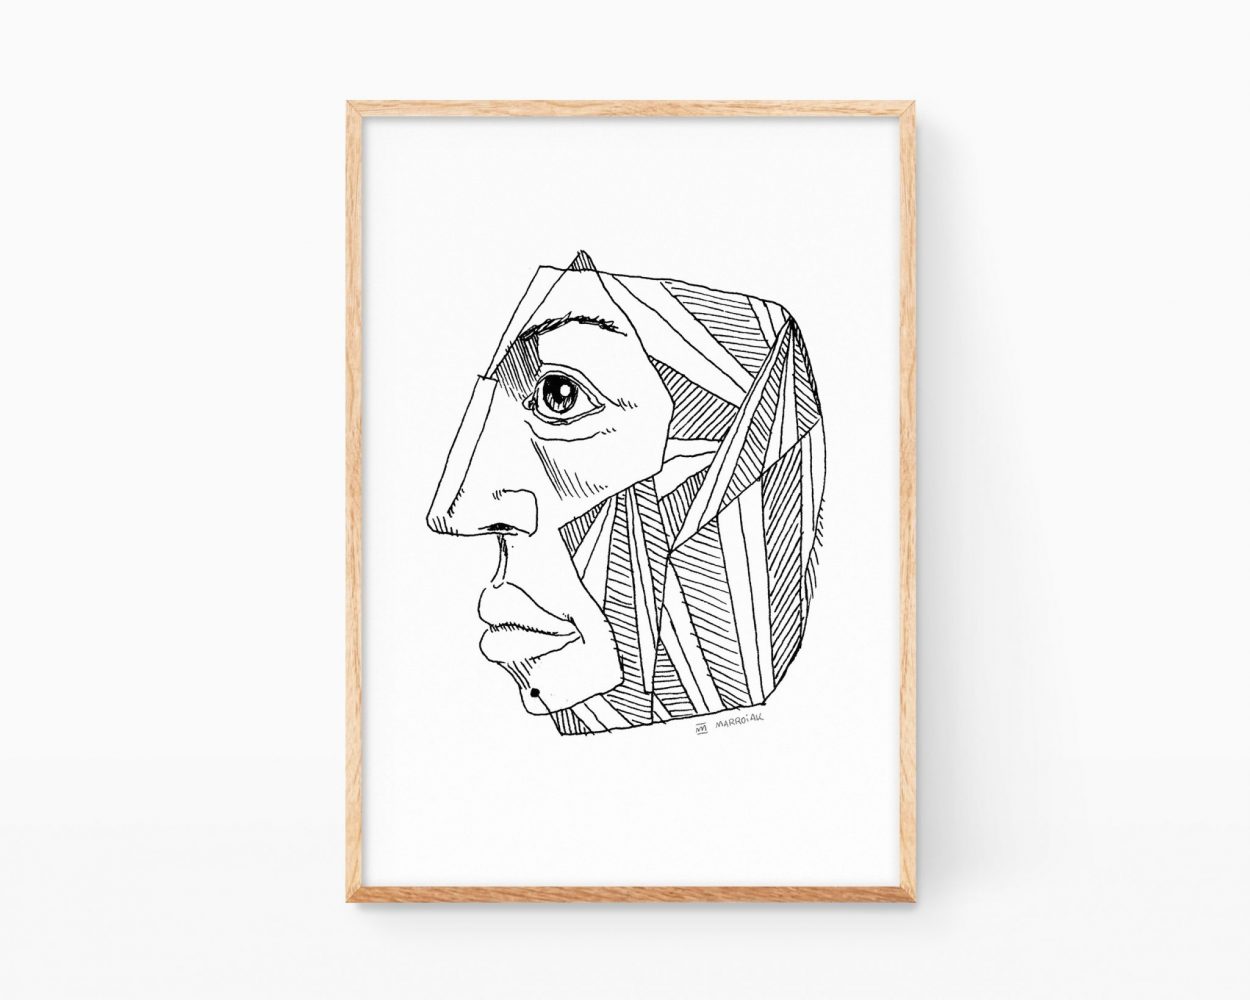 Lámina (print) en blanco y negro de una cabeza cubista. Cuadro decorativo para enmarcar con un retrato vanguardista lineal. Dibujos de arte moderno de estilo line art minimalista.